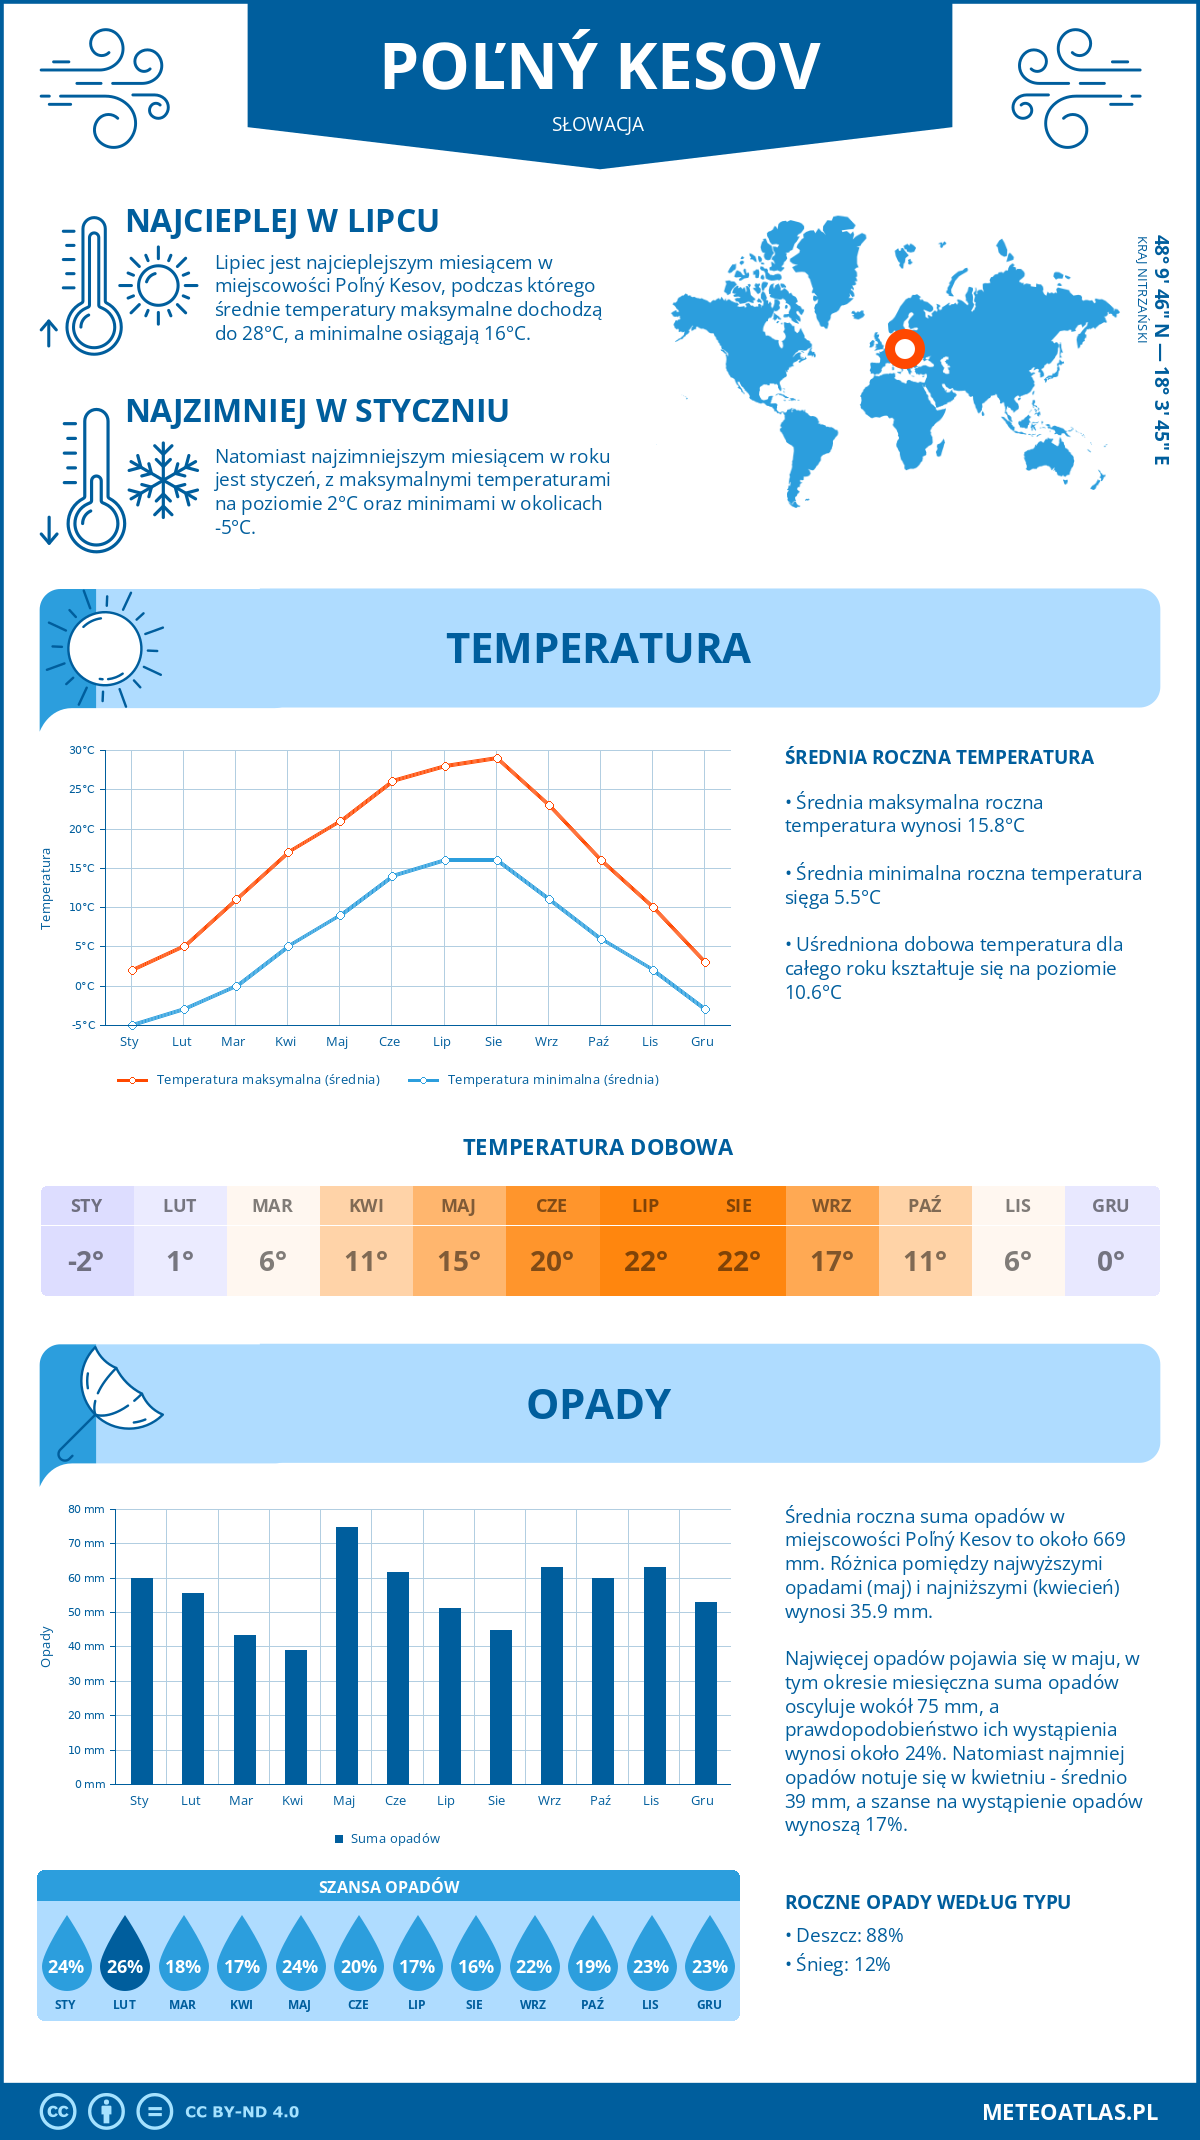 Pogoda Poľný Kesov (Słowacja). Temperatura oraz opady.